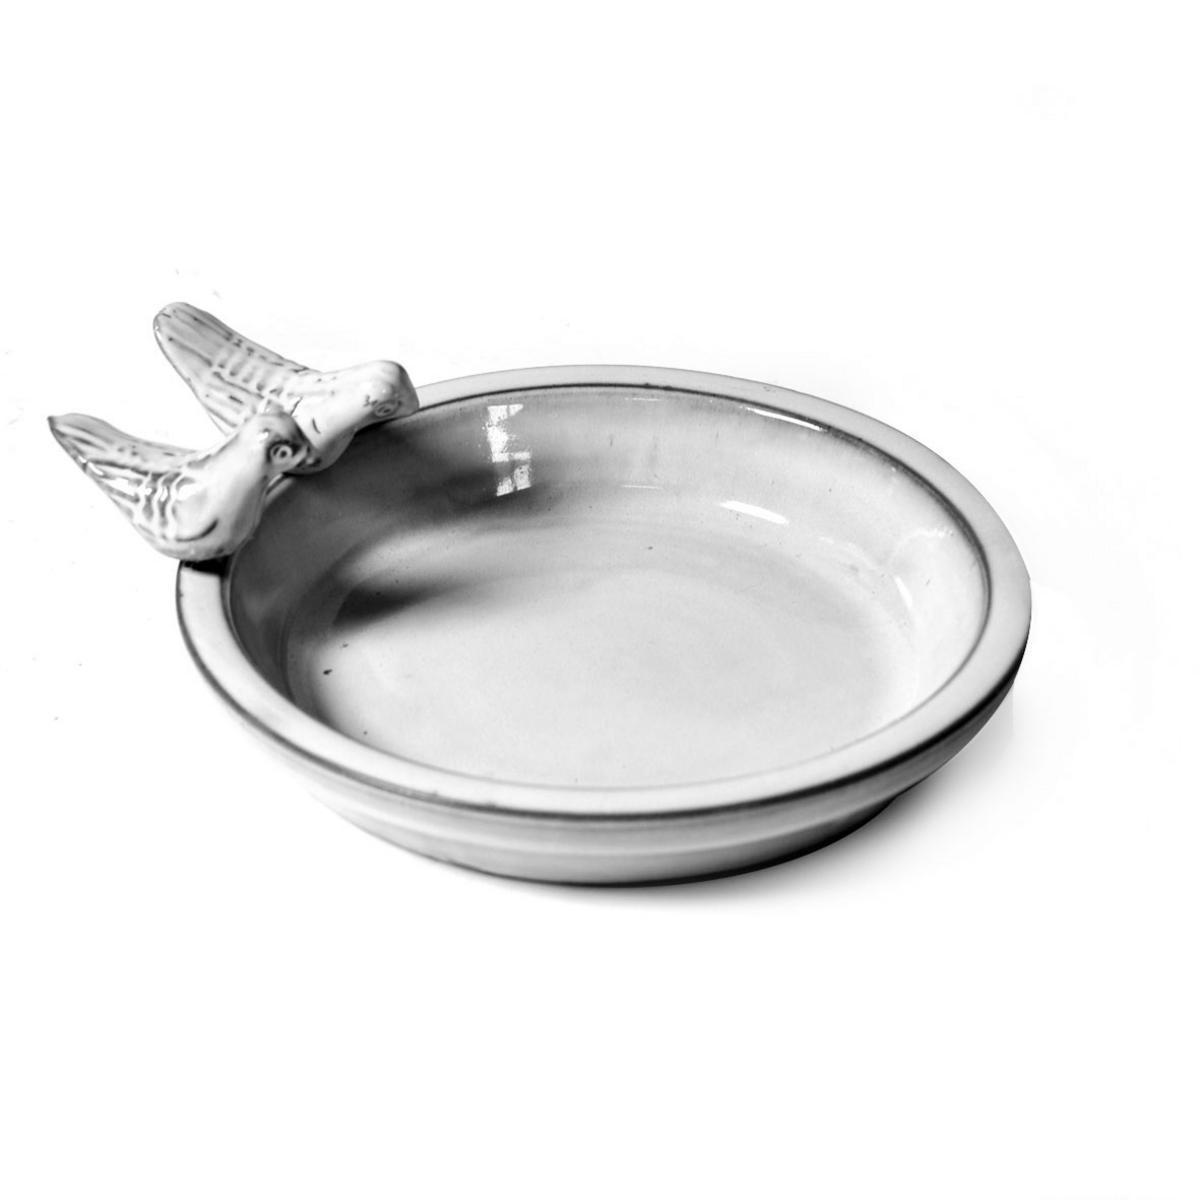 Mangeoire à oiseaux - Terre cuite émaillée - Ø 30 x H 3,5 cm - Blanc